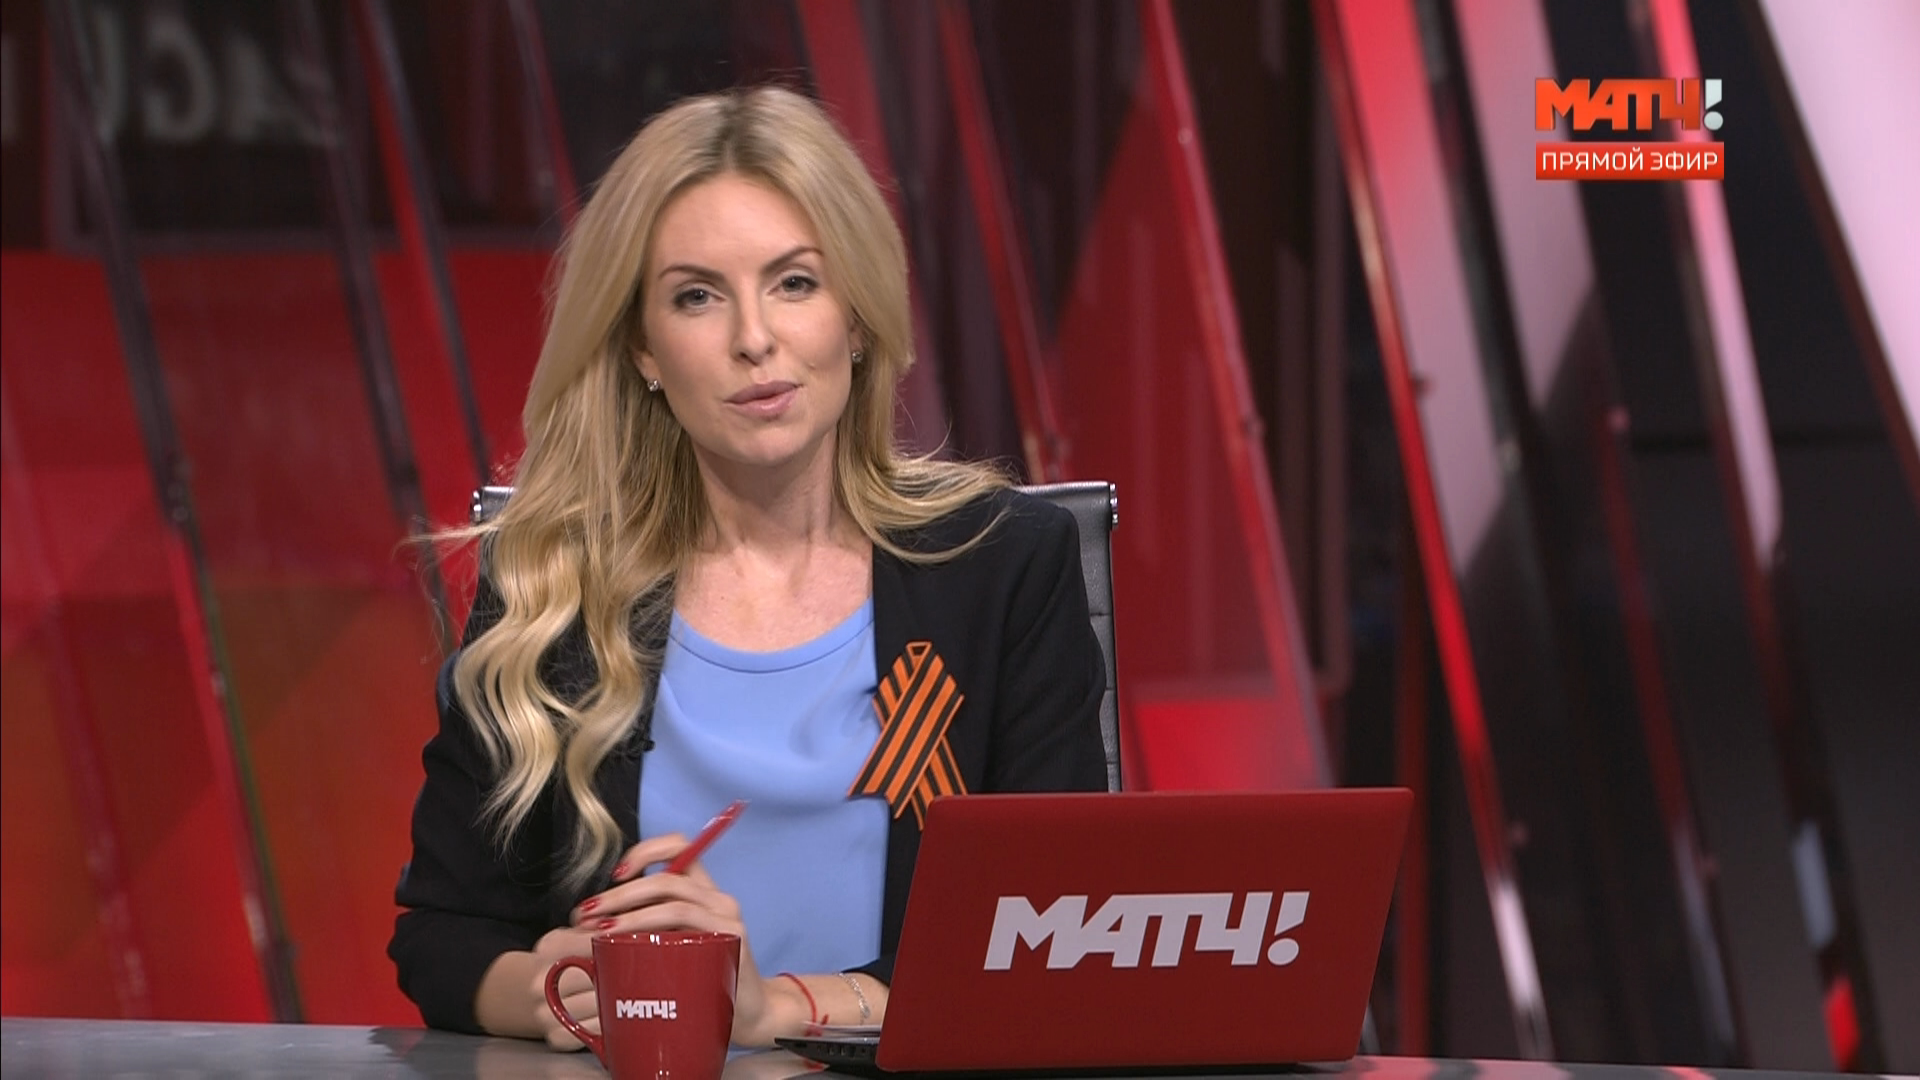 Ведущая матч ТВ Ольга Васюкова